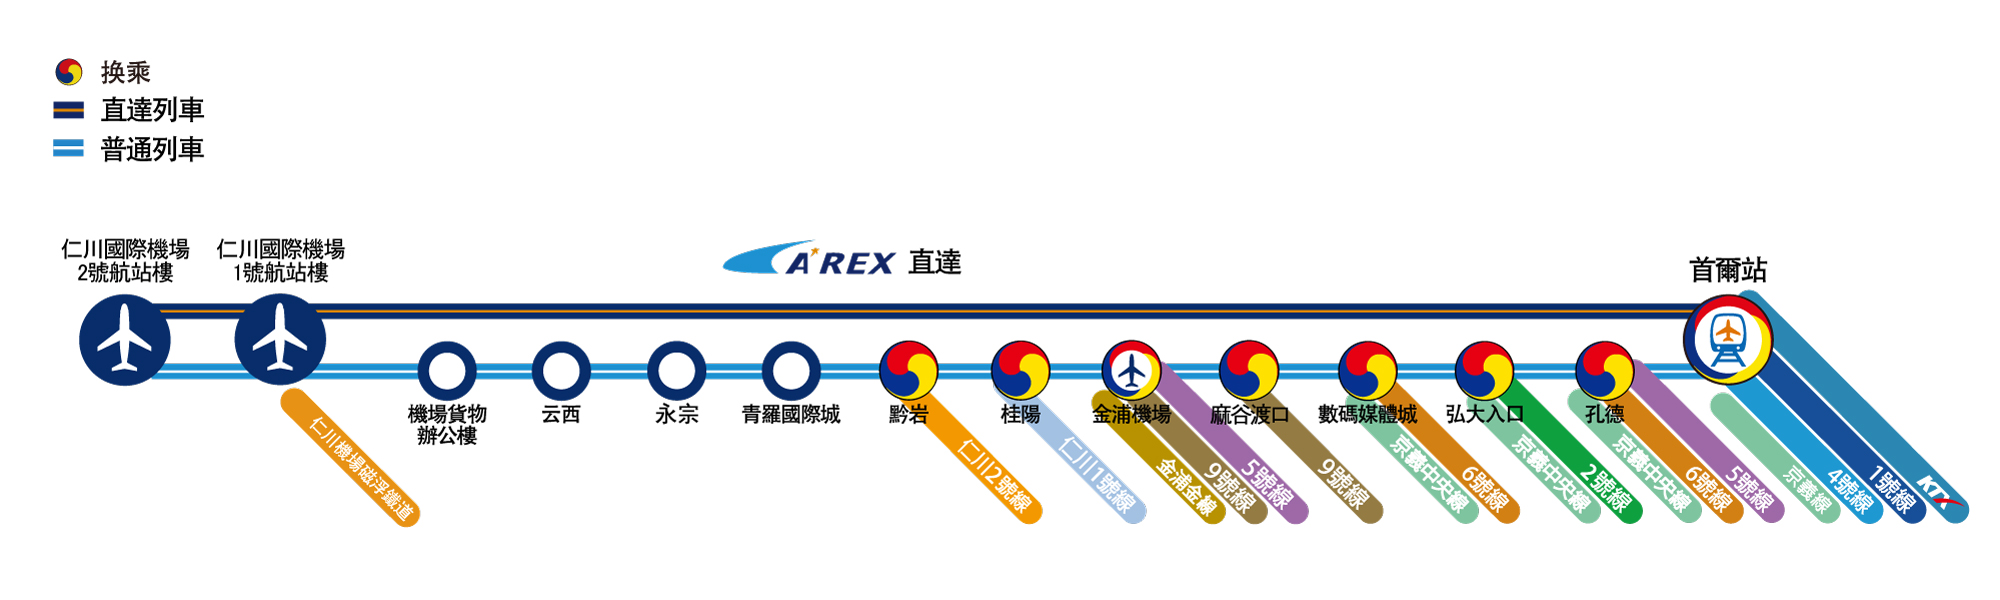 機場鐵路AREX路線圖